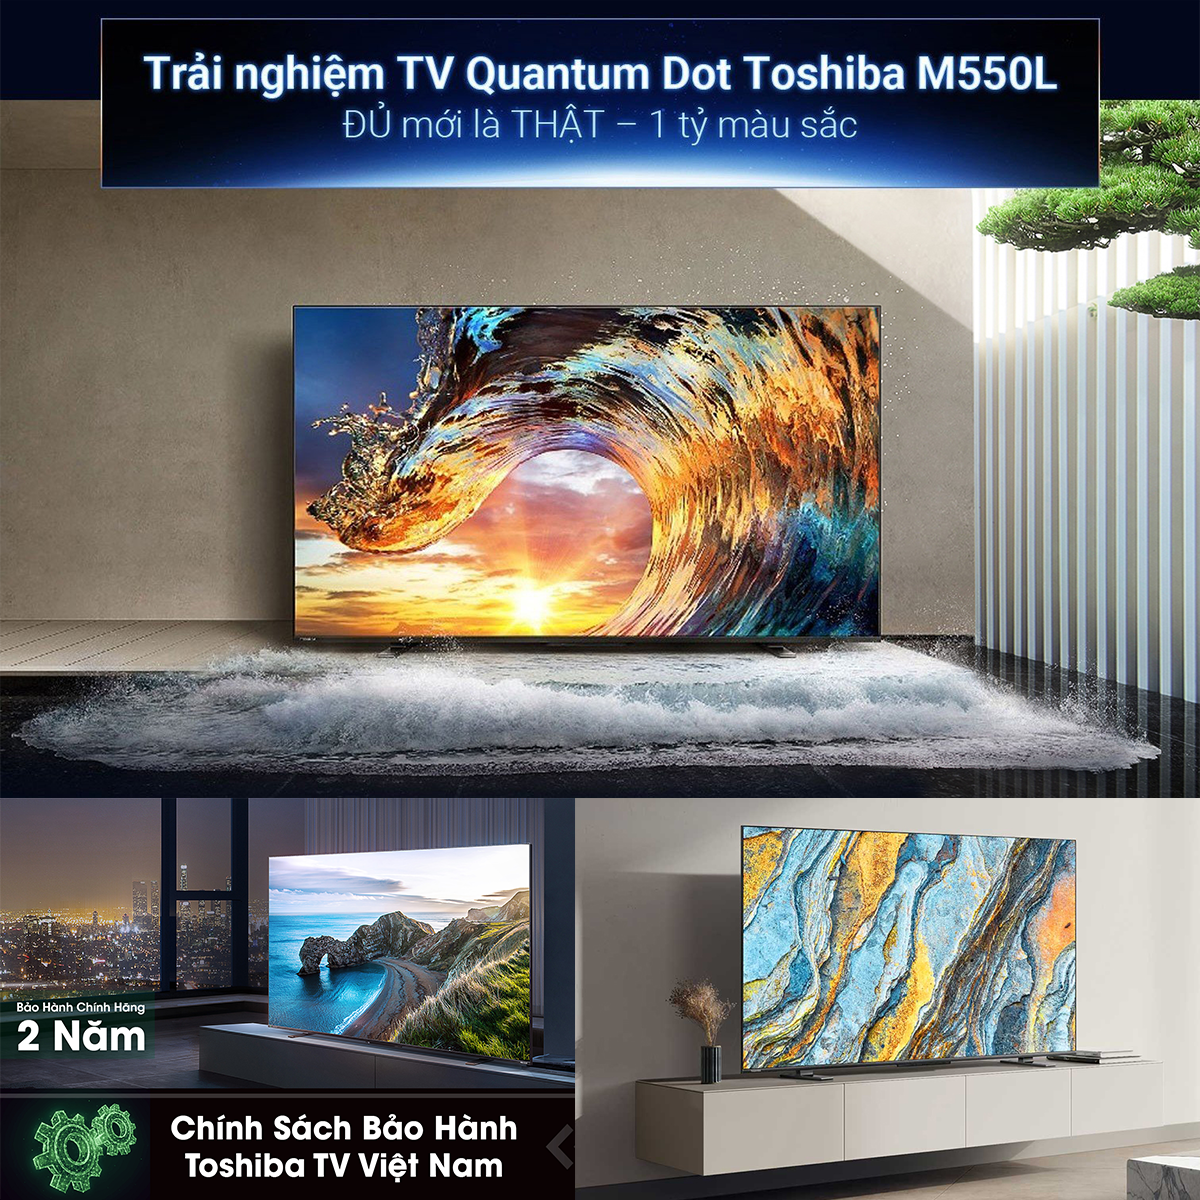 Google Tivi QLED TOSHIBA 50 inch 50M550LP, Smart TV Màn Hình Quantum Dot 4K UHD - Loa 49W - Hàng Chính Hãng